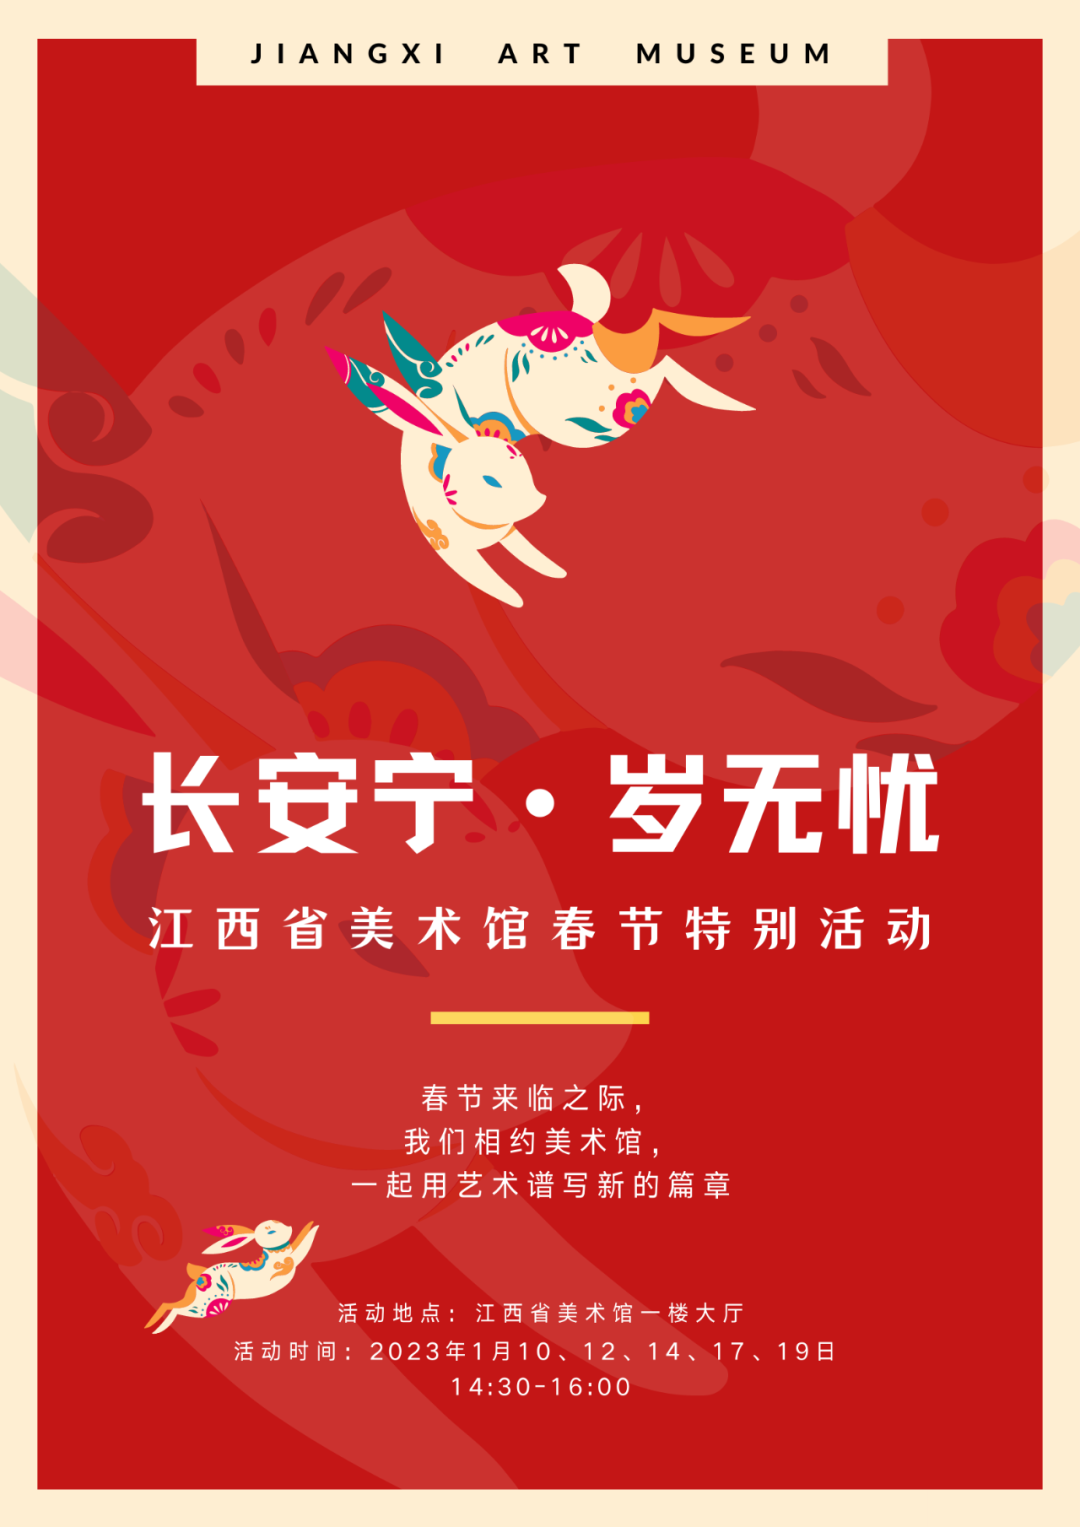 活动预告 | 长安宁·岁无忧——江西省美术馆春节特别活动